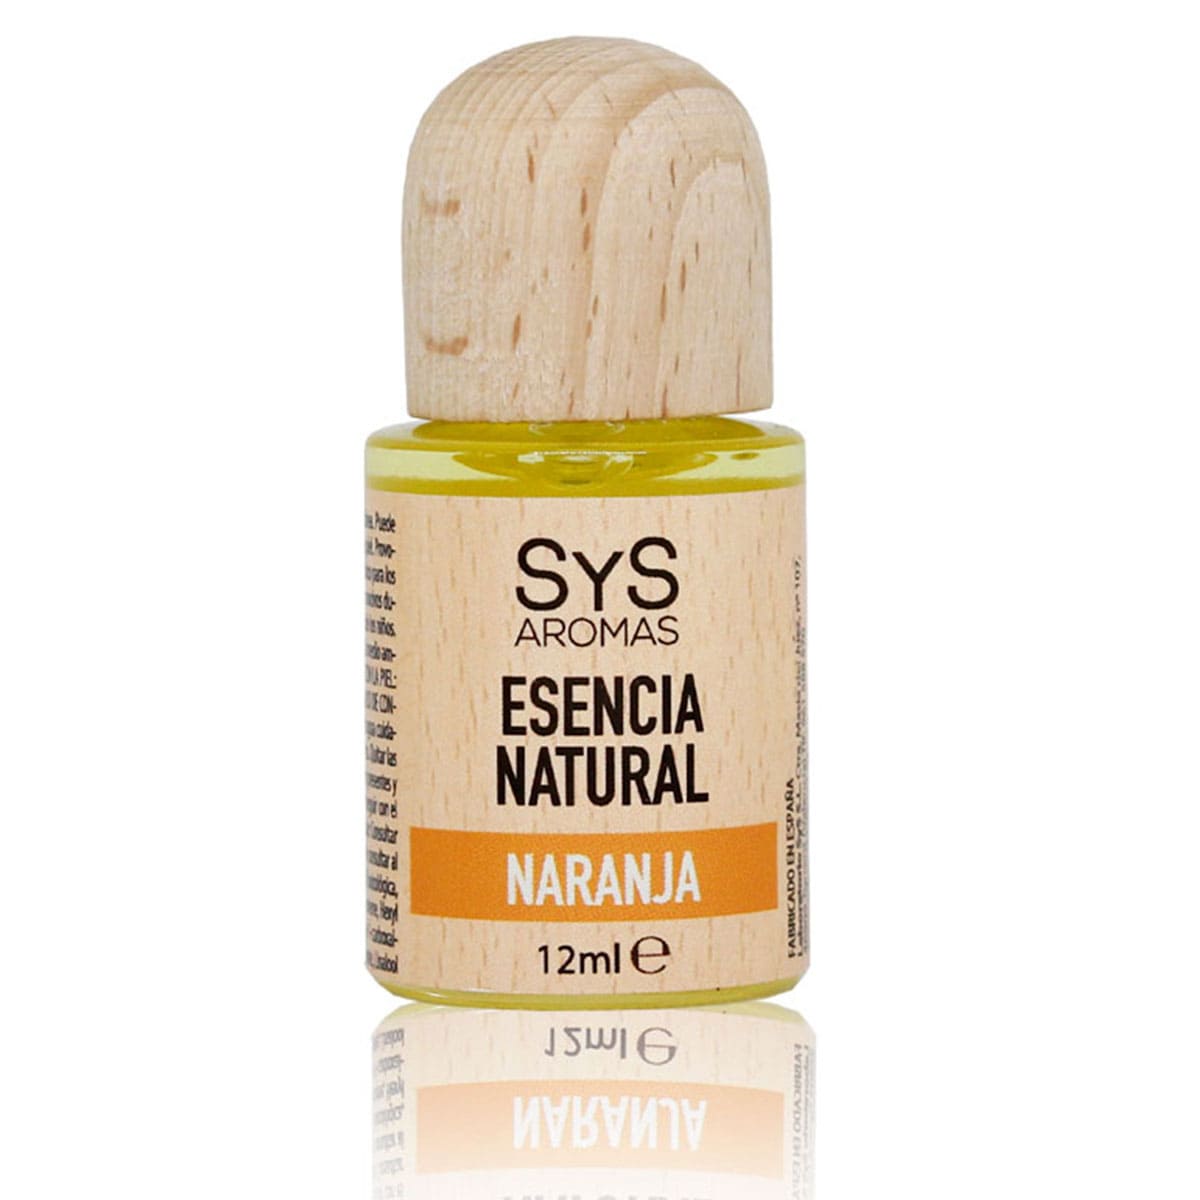 Buy Orange Essence 12ml SYS Aromas